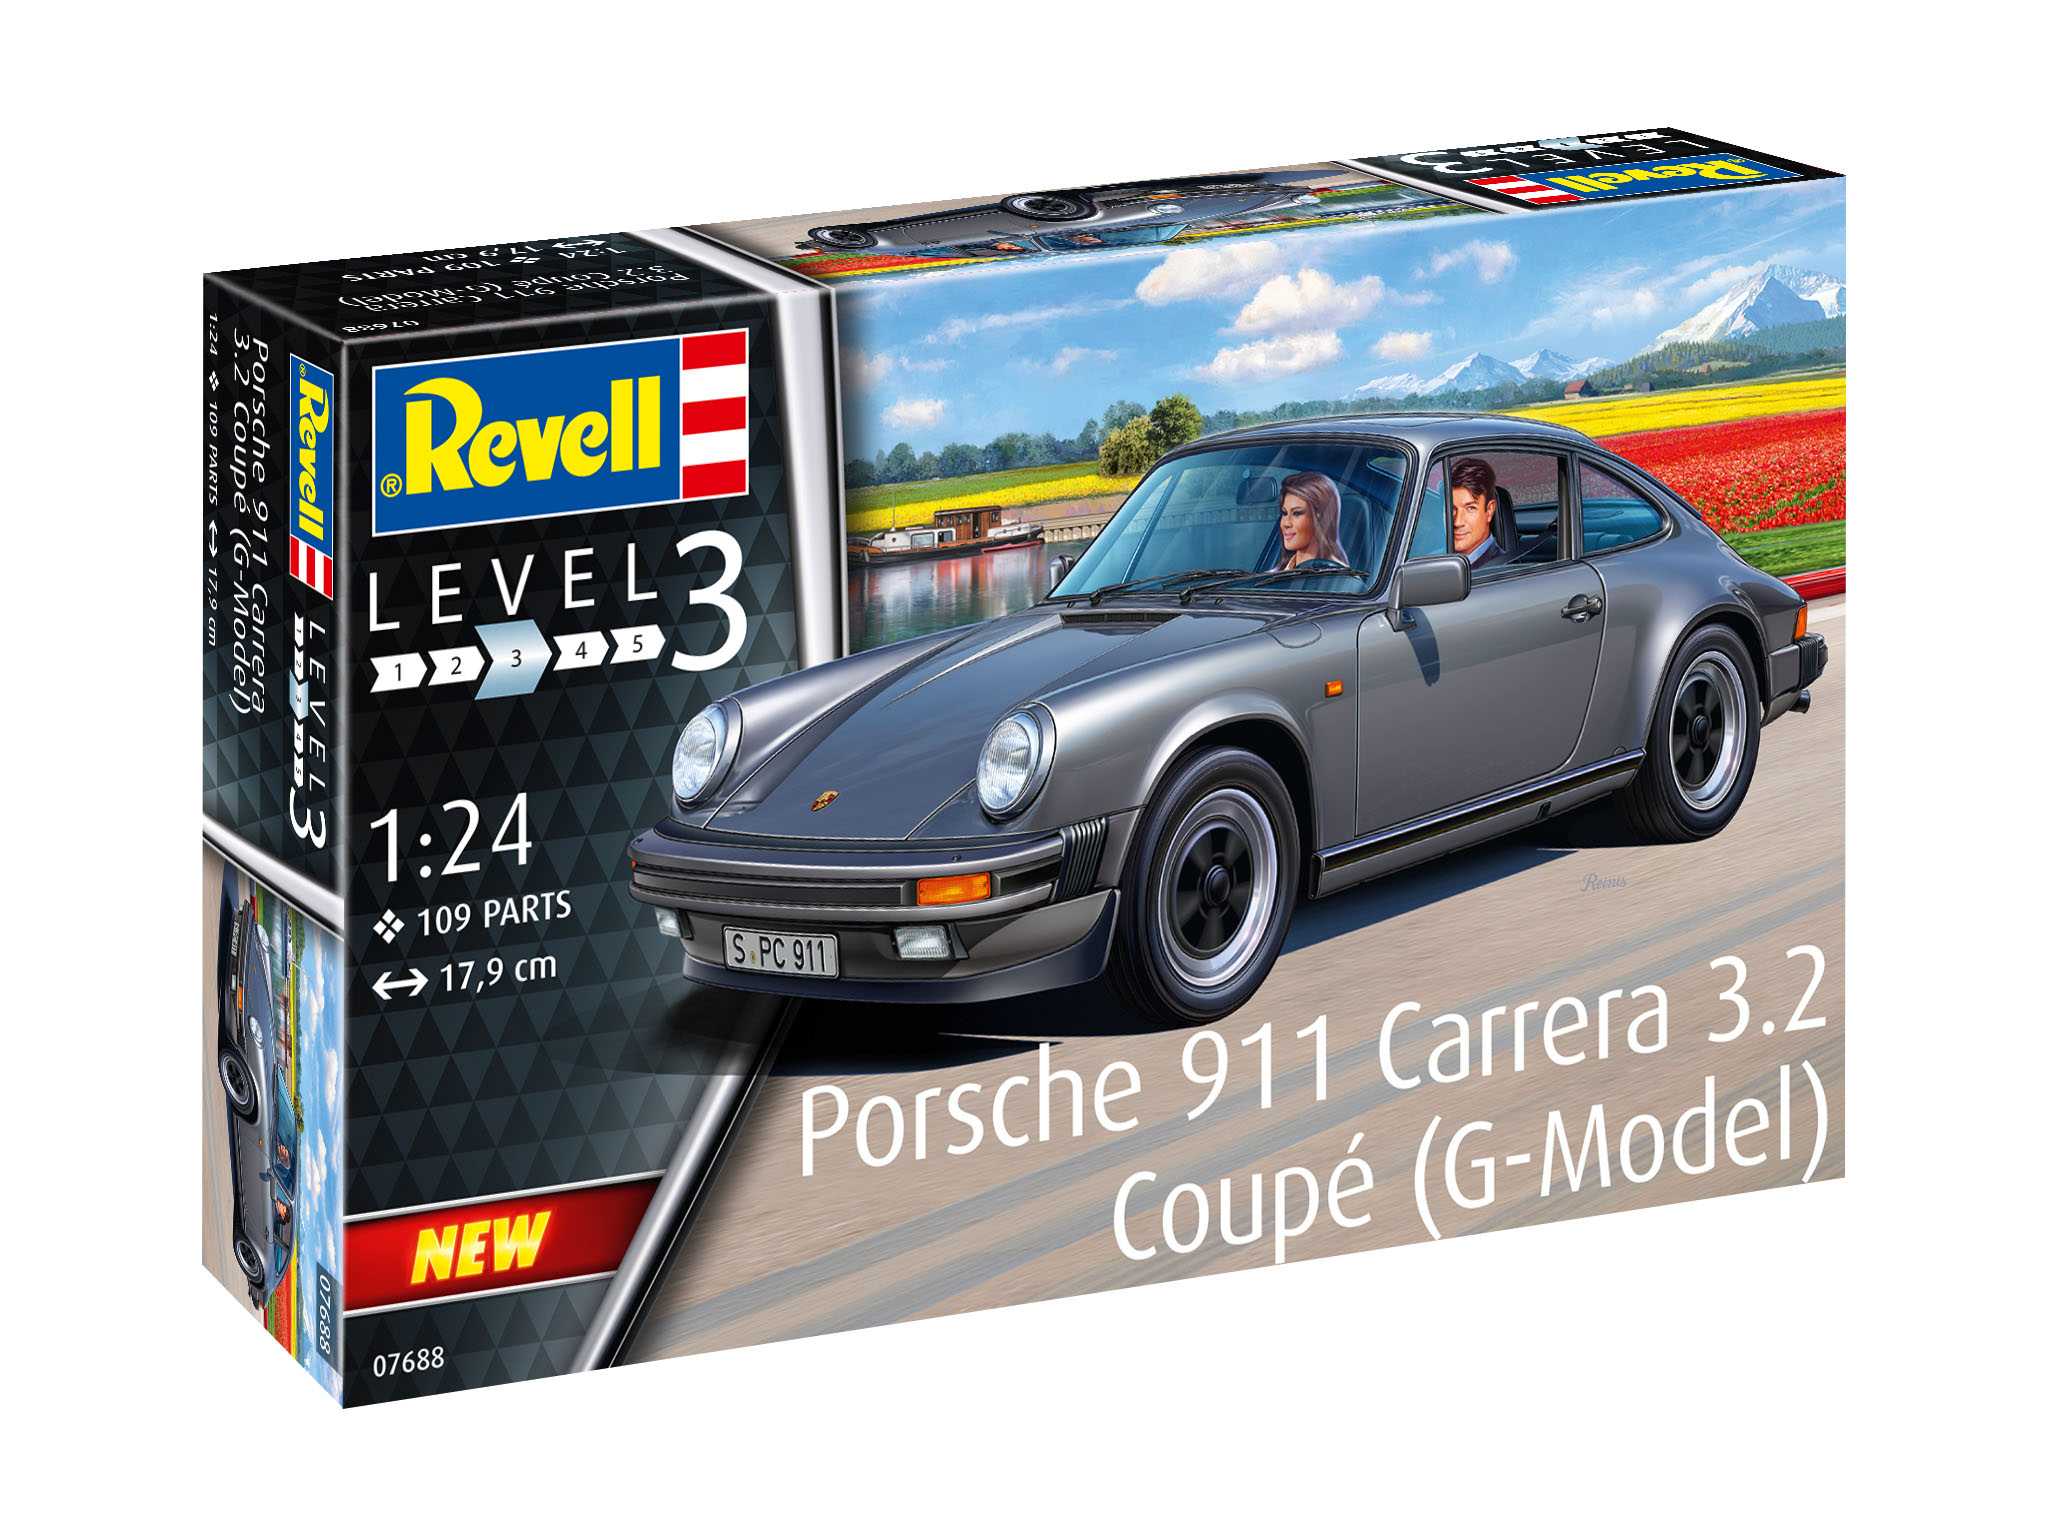 Fotografie Plastic ModelKit auto 07688 - Porsche 911 Coupé (G-Model) (1:24)